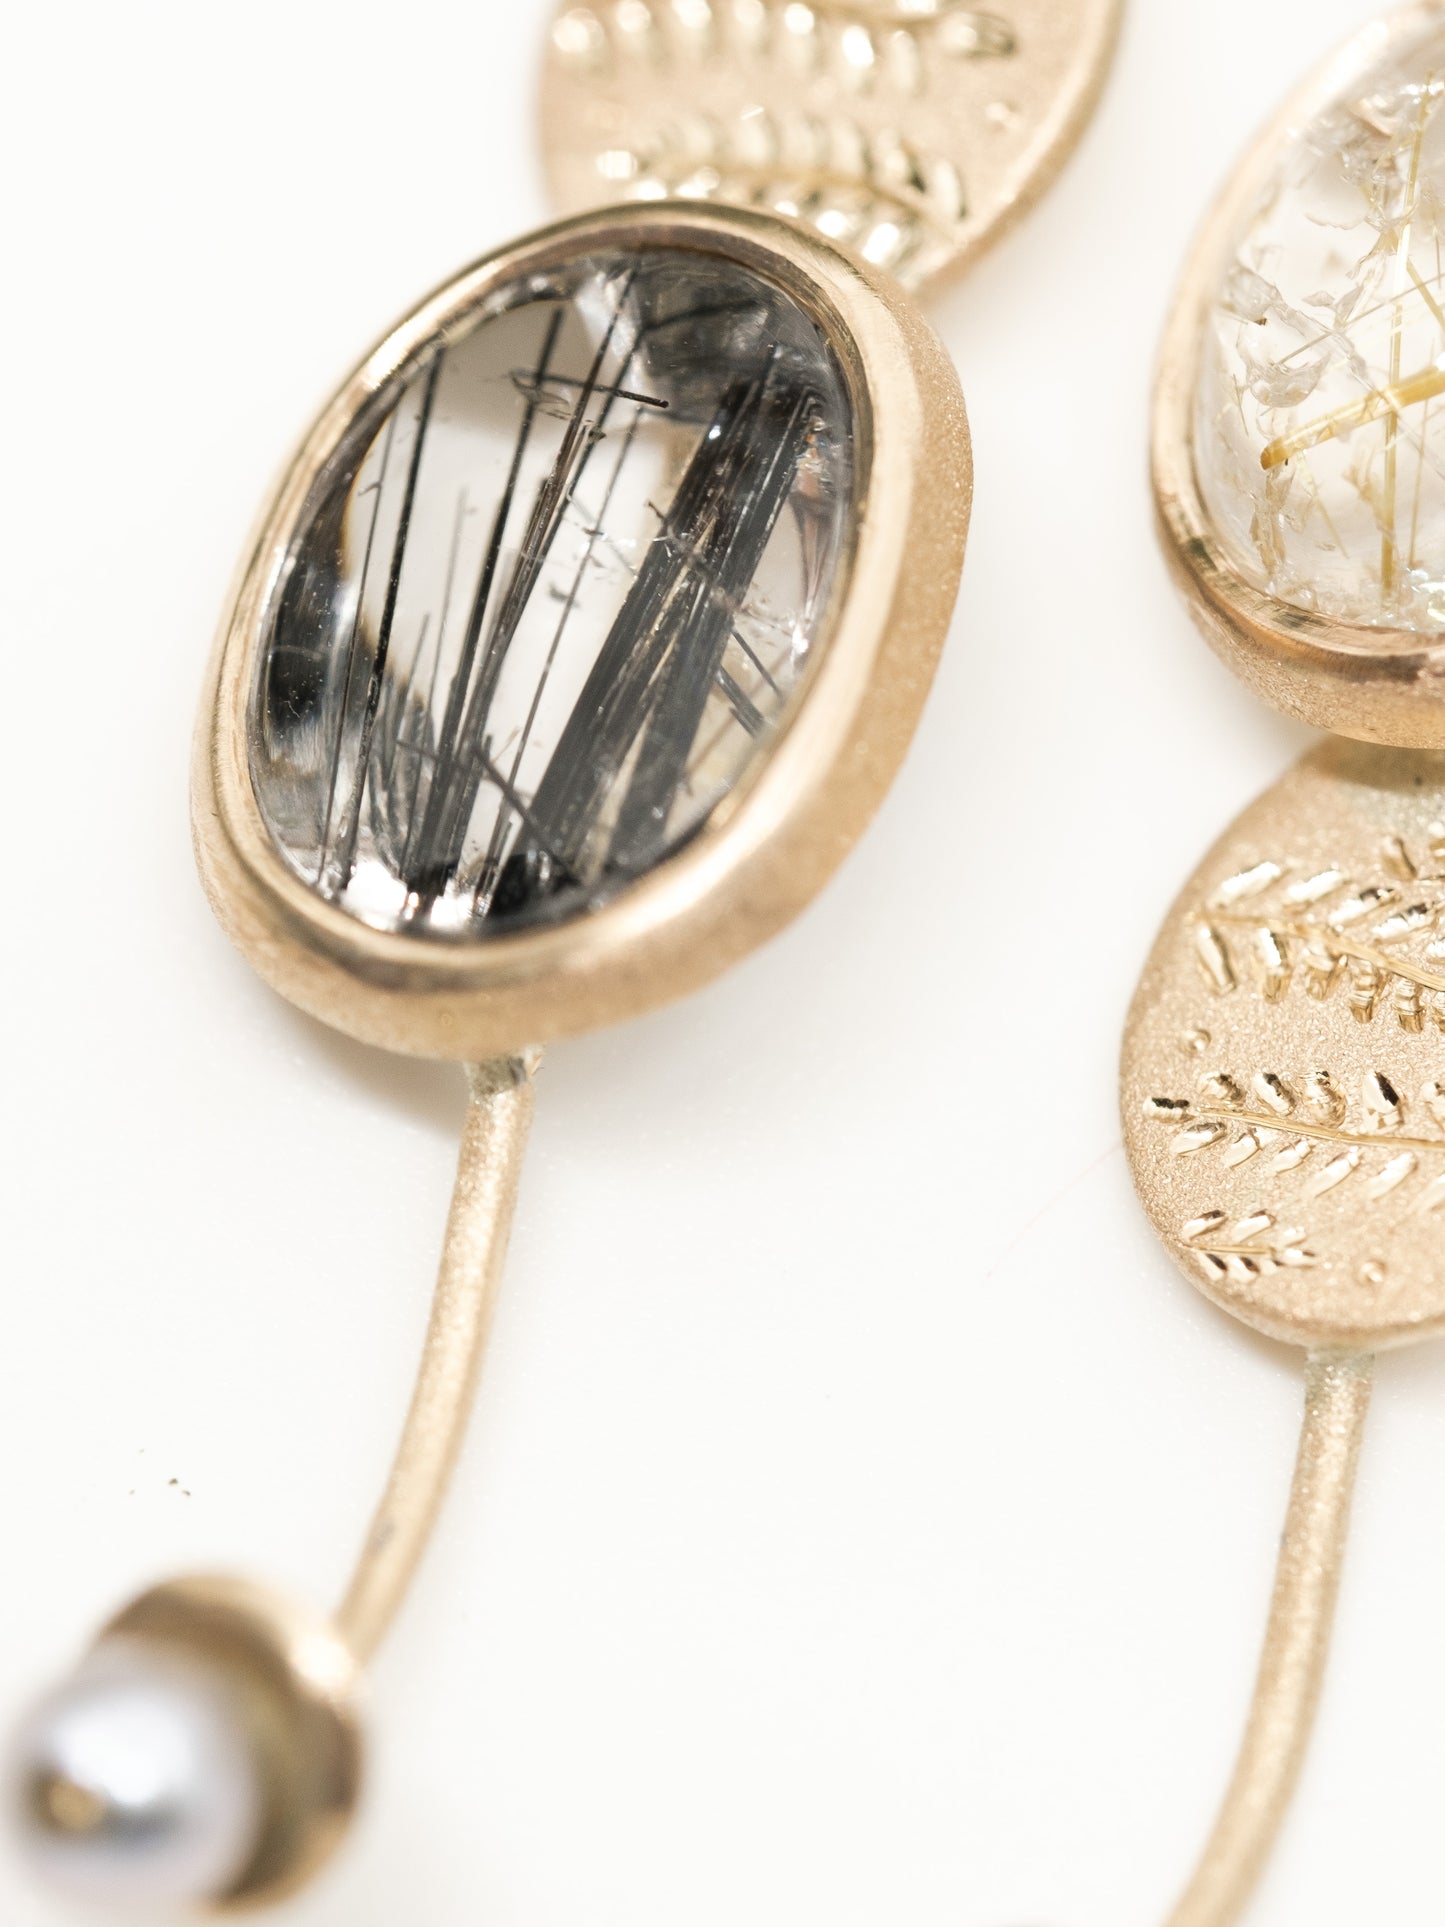 Engraved earrings